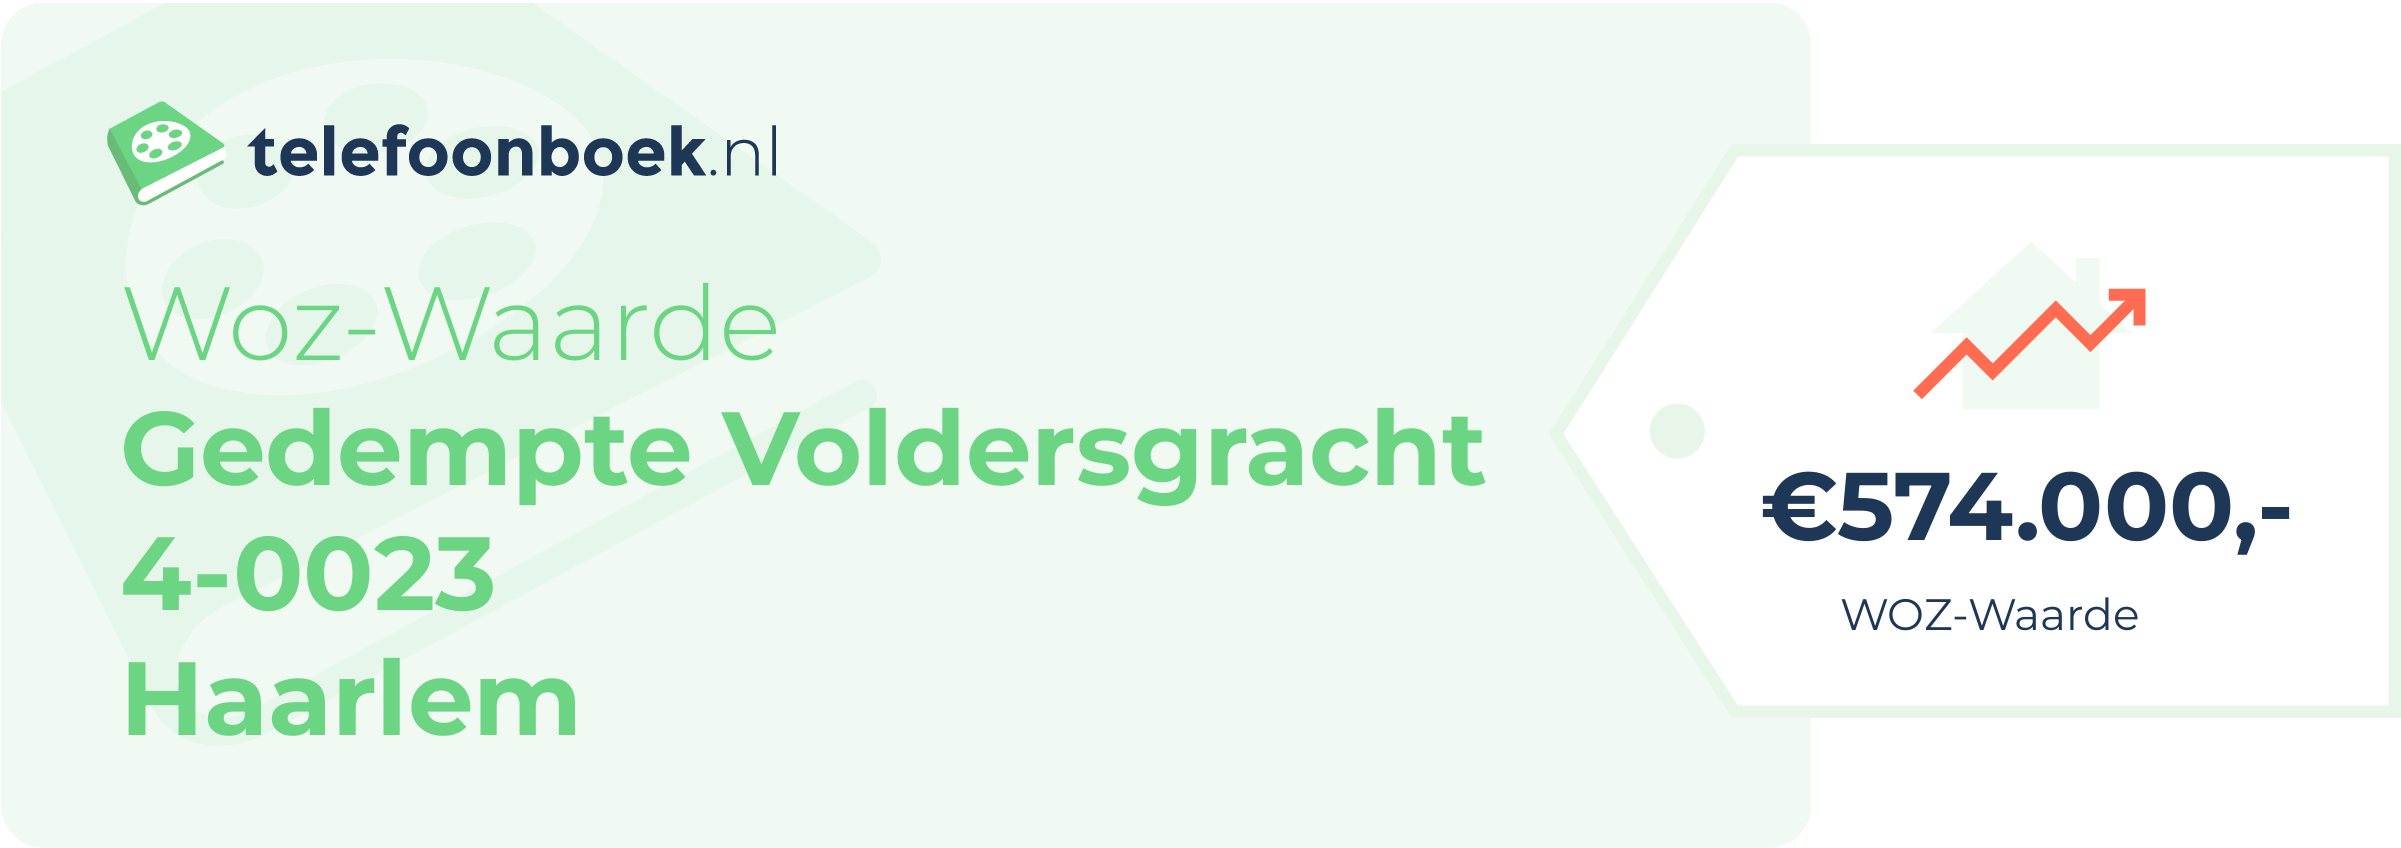 WOZ-waarde Gedempte Voldersgracht 4-0023 Haarlem